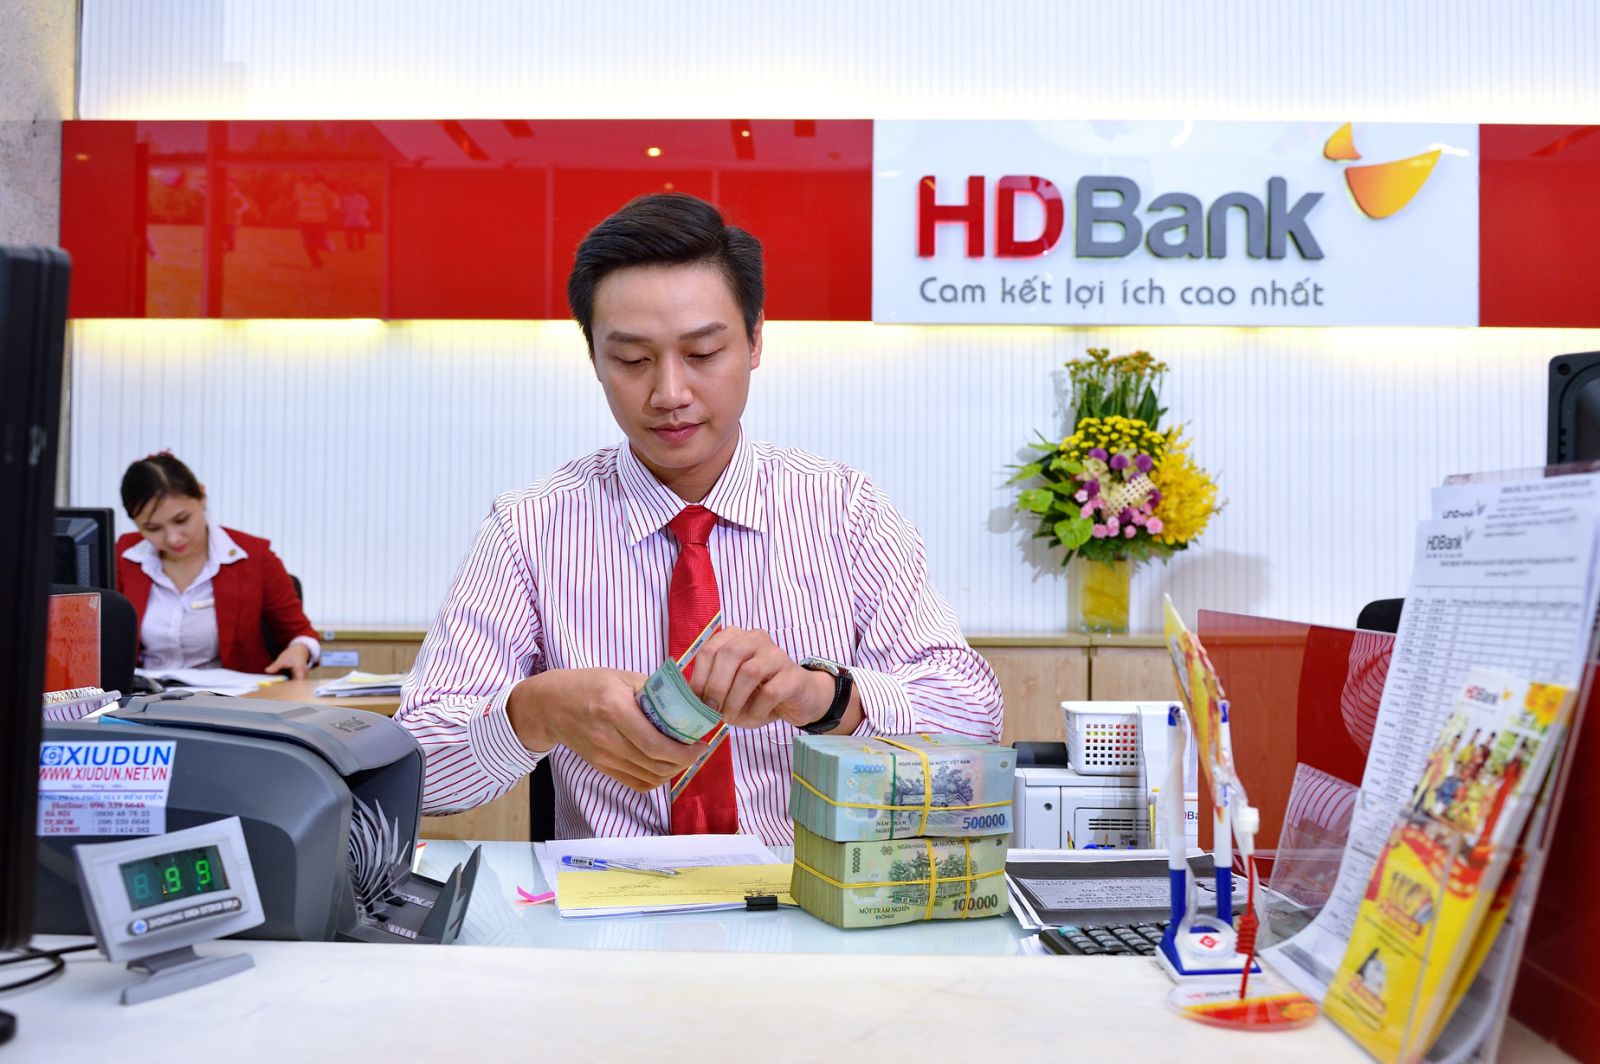 Những kết quả tích cực trong năm 2021 đã khẳng định năng lực duy trì tăng trưởng cao, bền vững cùng triển vọng tươi sáng của HDBank trong nhiều năm tới - Ảnh: HDBank